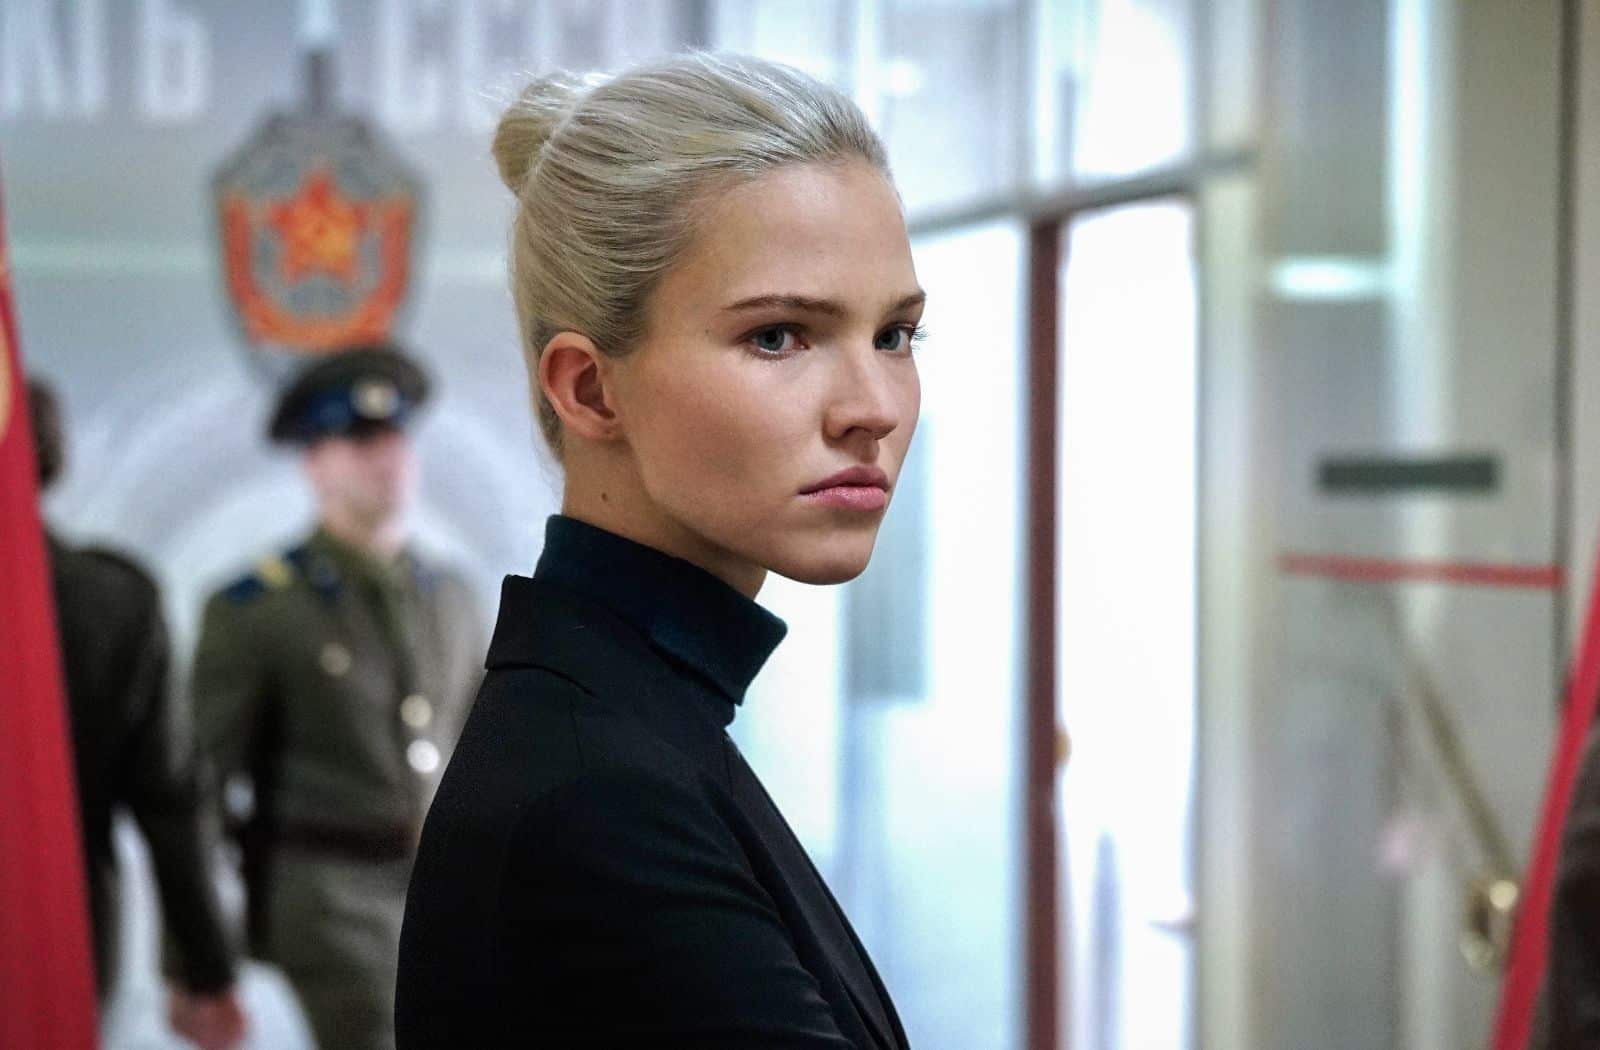 La protagonista, Anna, bajo la dirección de Luc Besson, viste ropas negras de cuello alto, lleva el pelo recogido. Mira a su derecha, mientras que a su espalda circulan dos agentes de policía rusos. 